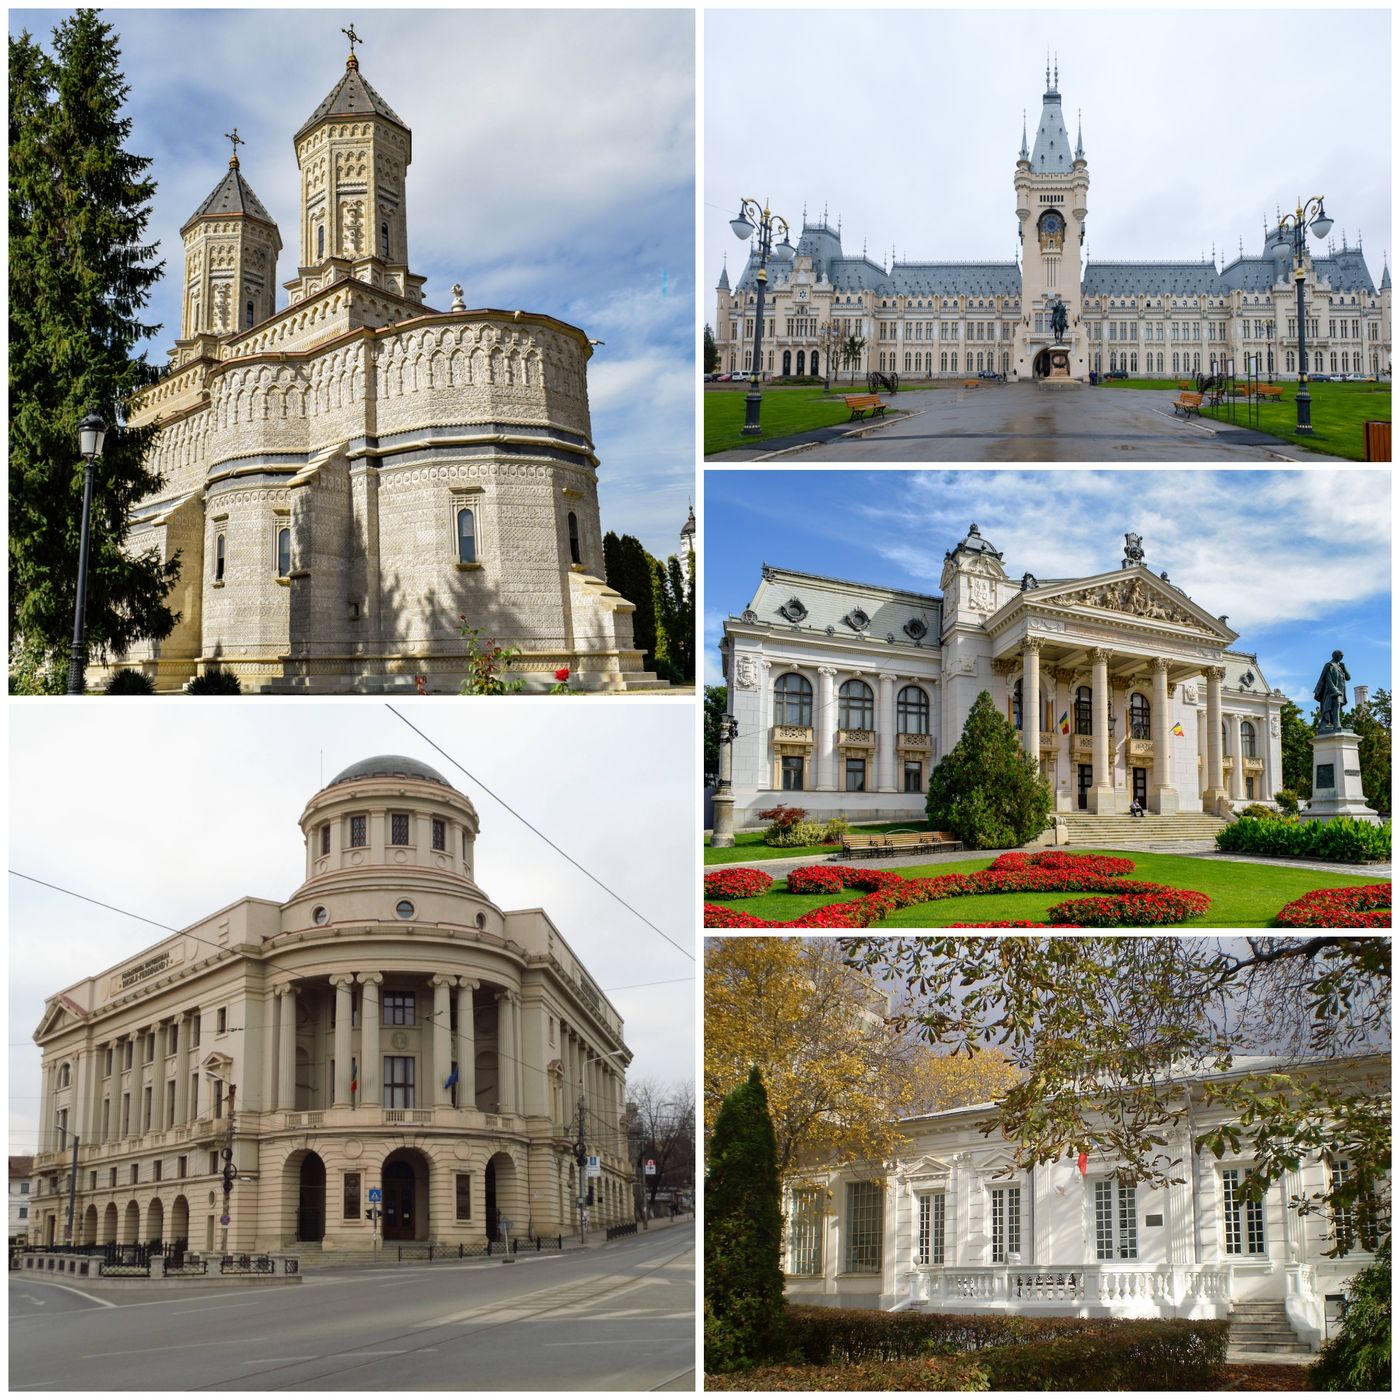 Iași: A window into Romania's soul